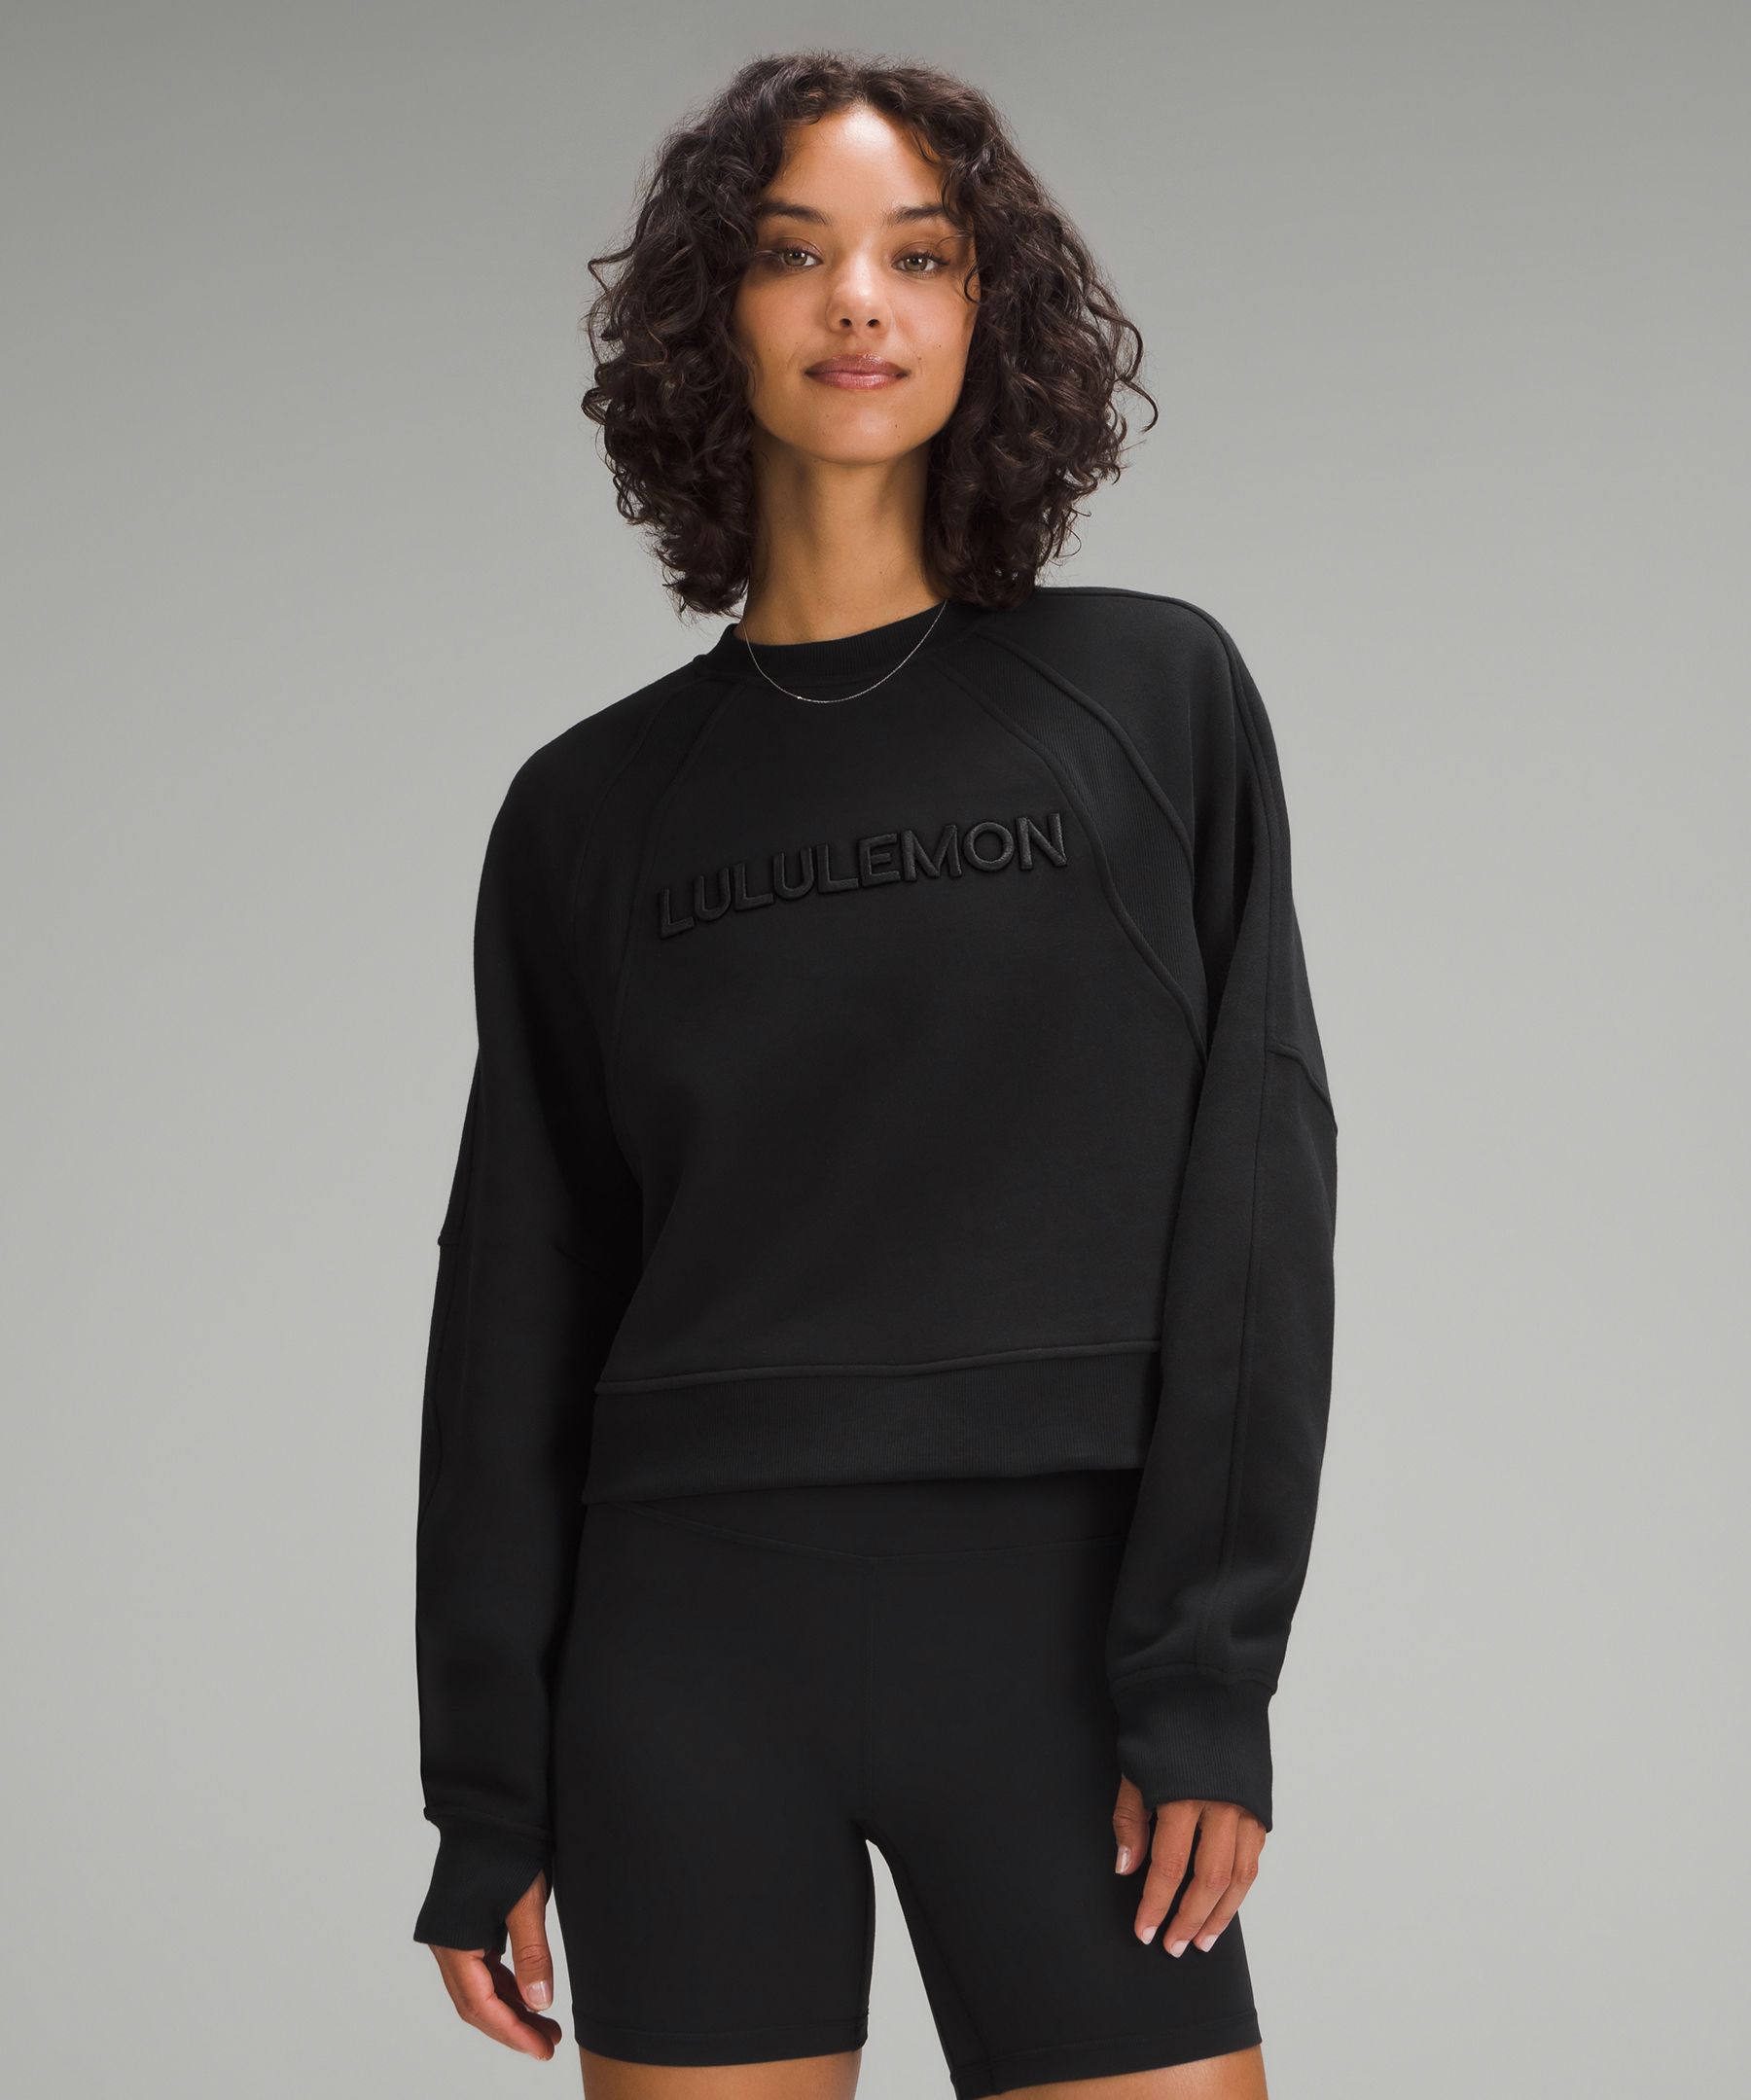 Scuba Oversized Pullover *Wordmark | Women's Hoodies & Sweatshirts